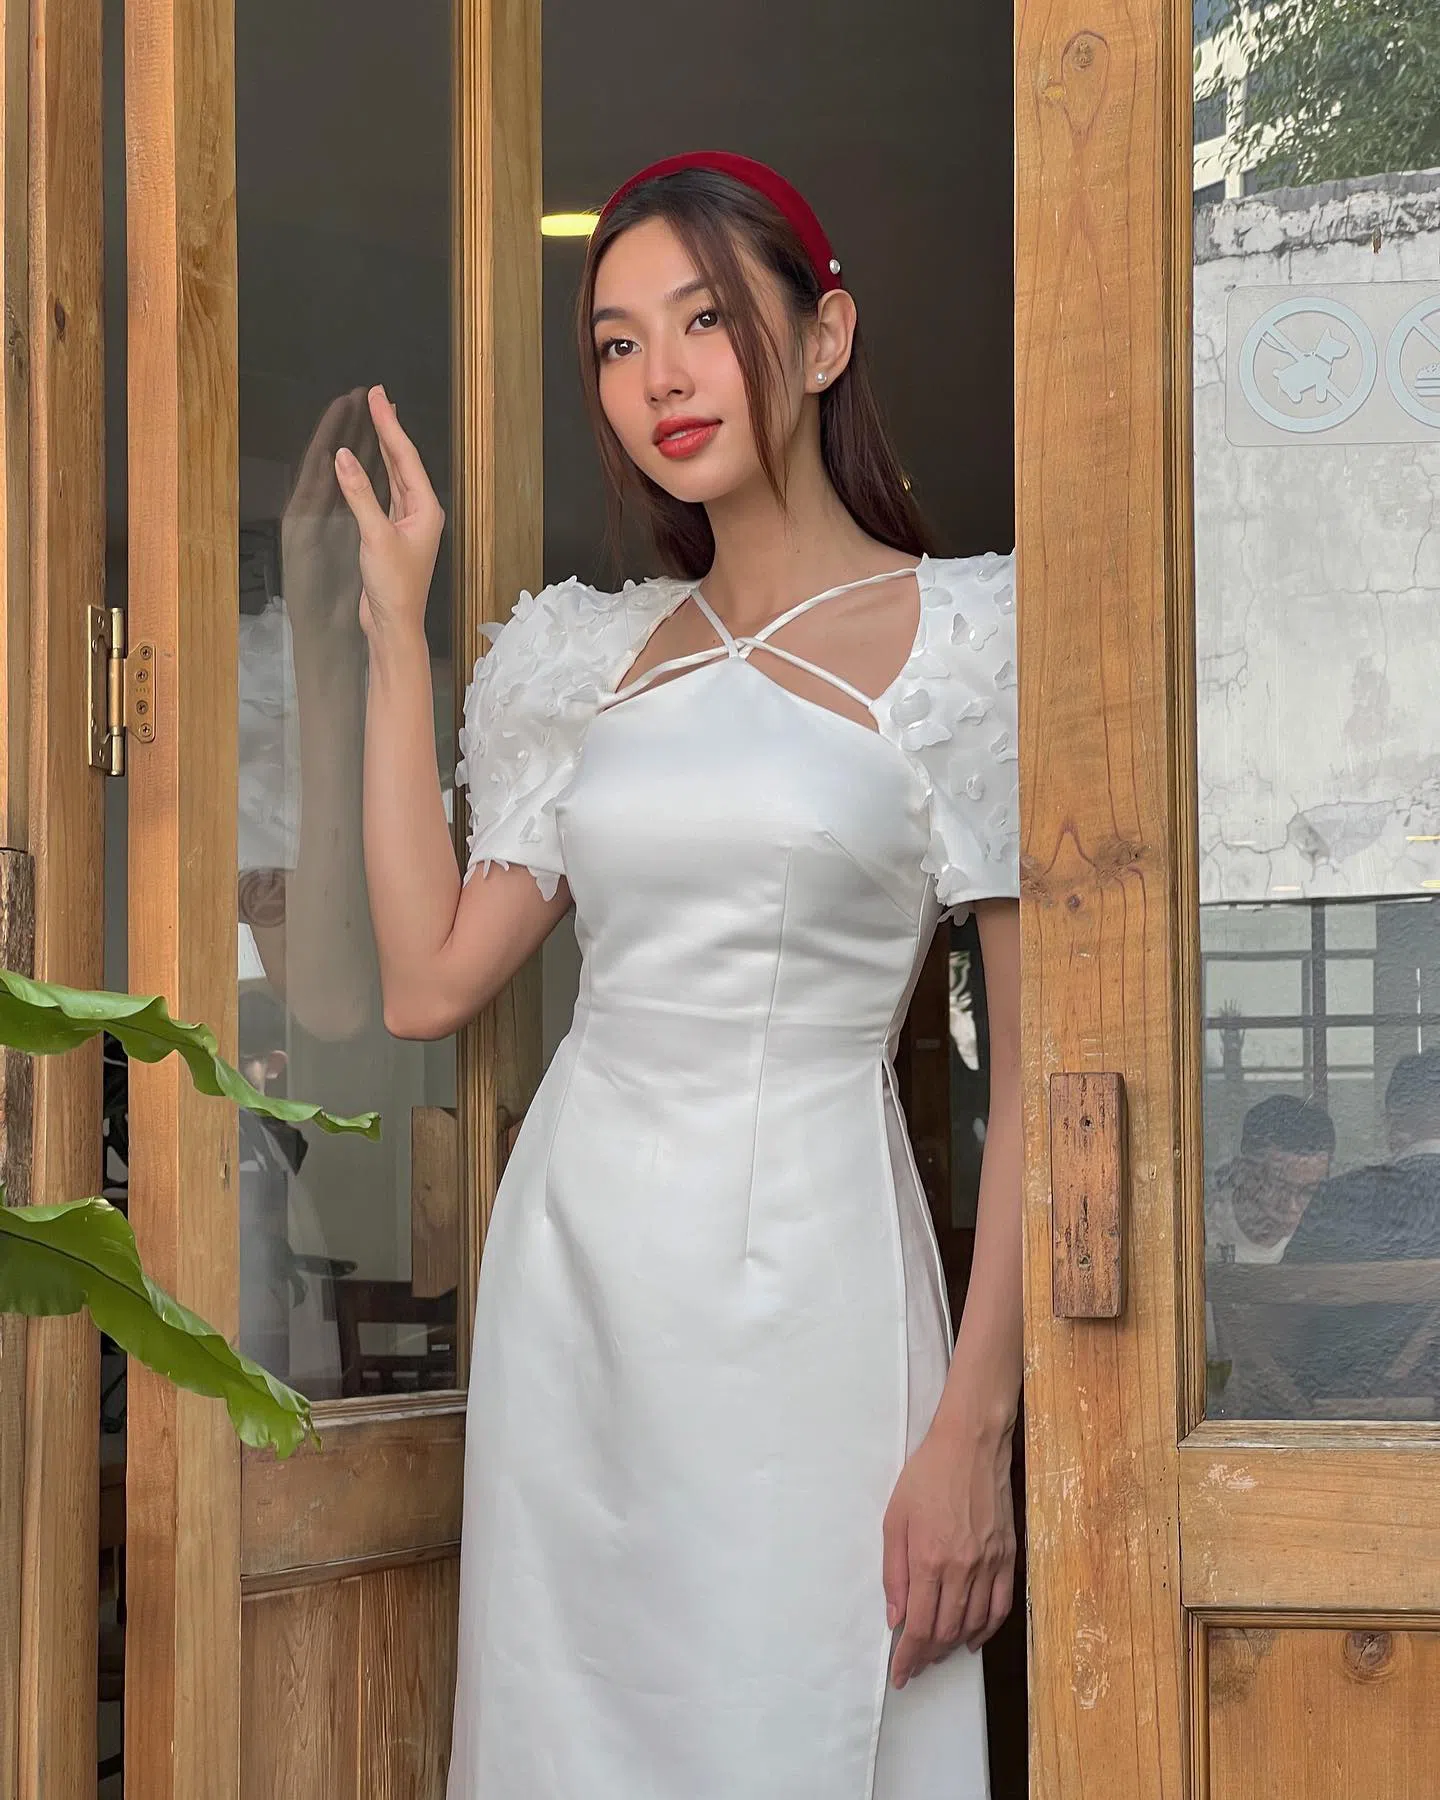 Hoa hậu Thùy Tiên 'vượt mặt' Sơn Tùng trong năm 2022, độ hot chỉ xếp sau 2 sao nam này